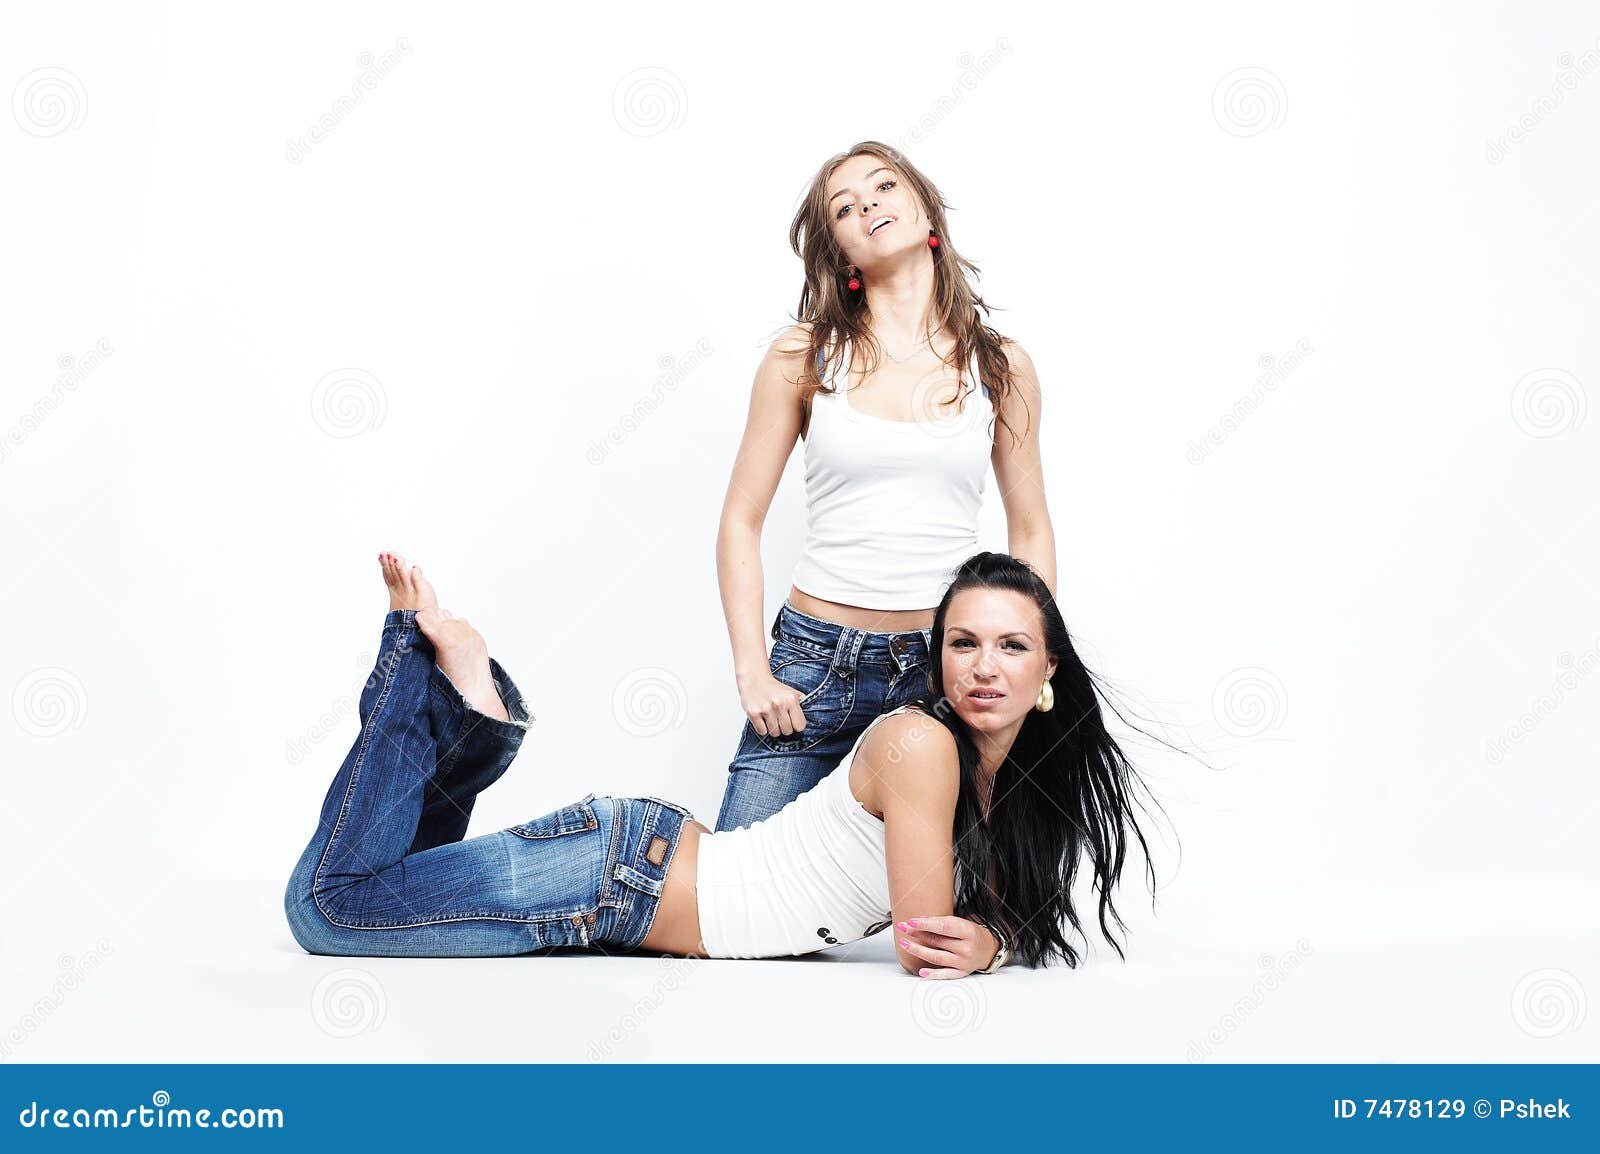 жизнерадостные девушки 2. голубые белизна джинсыов 2 подруг нося